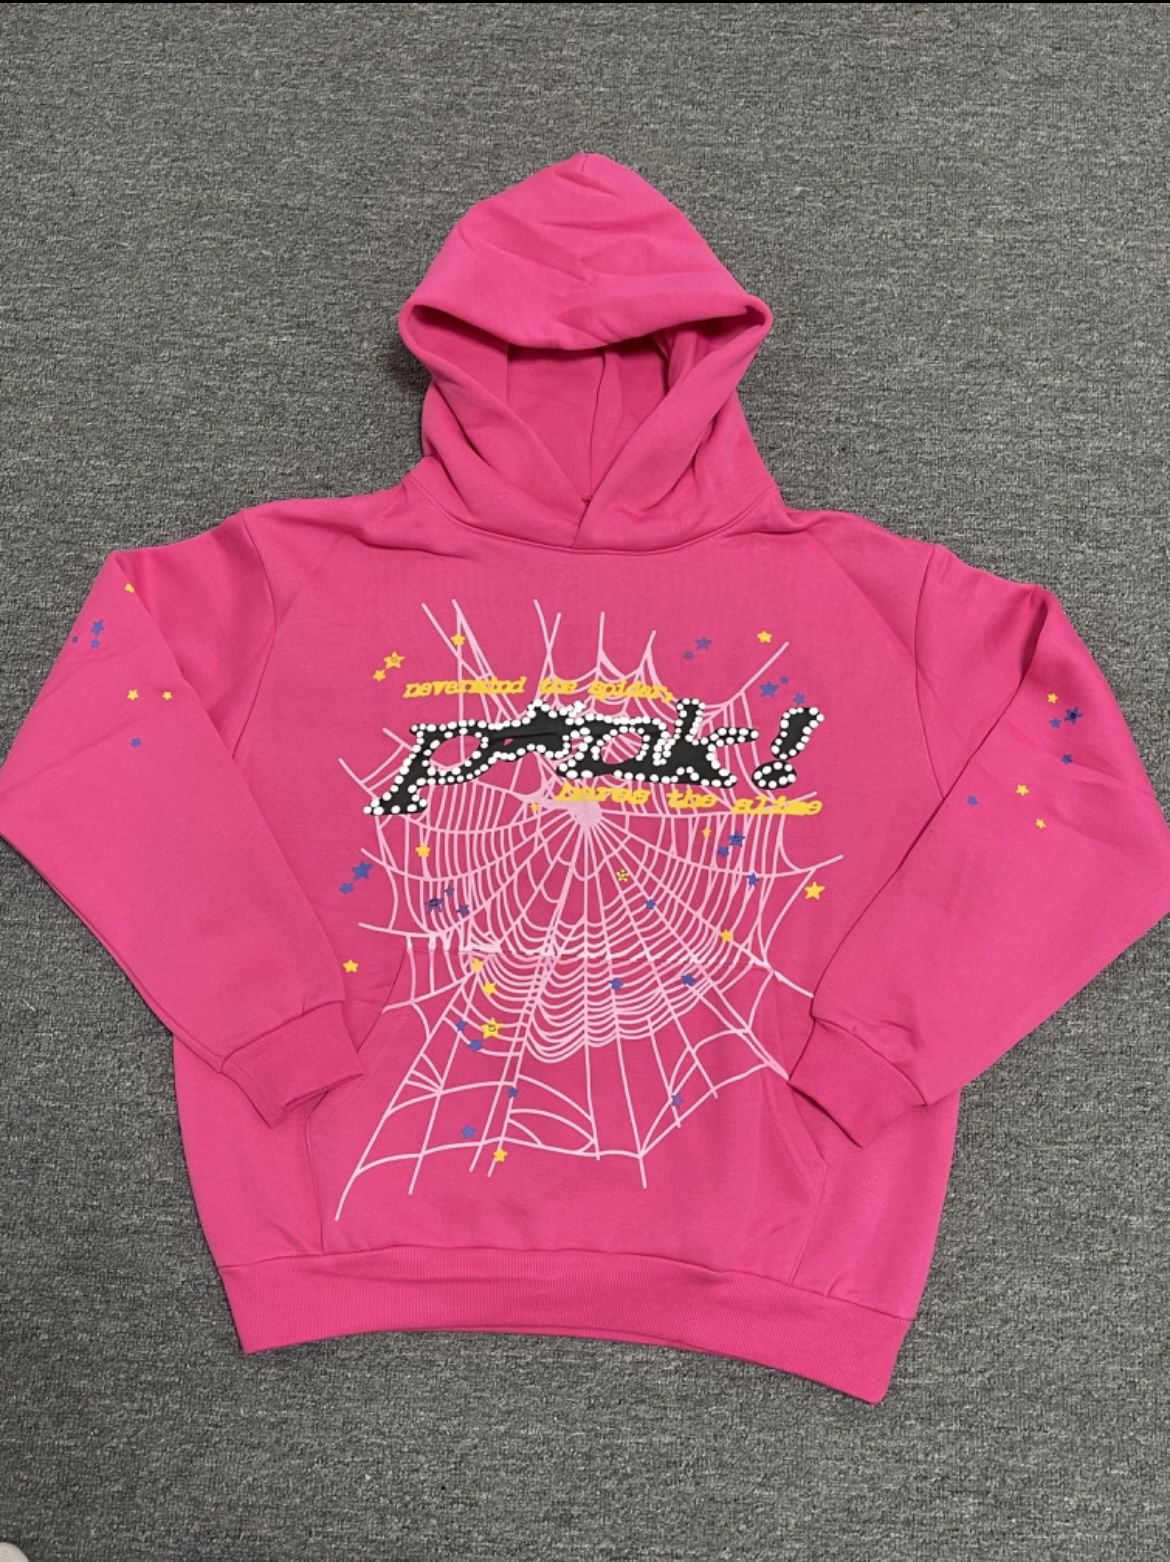 Spider hoodie Pink